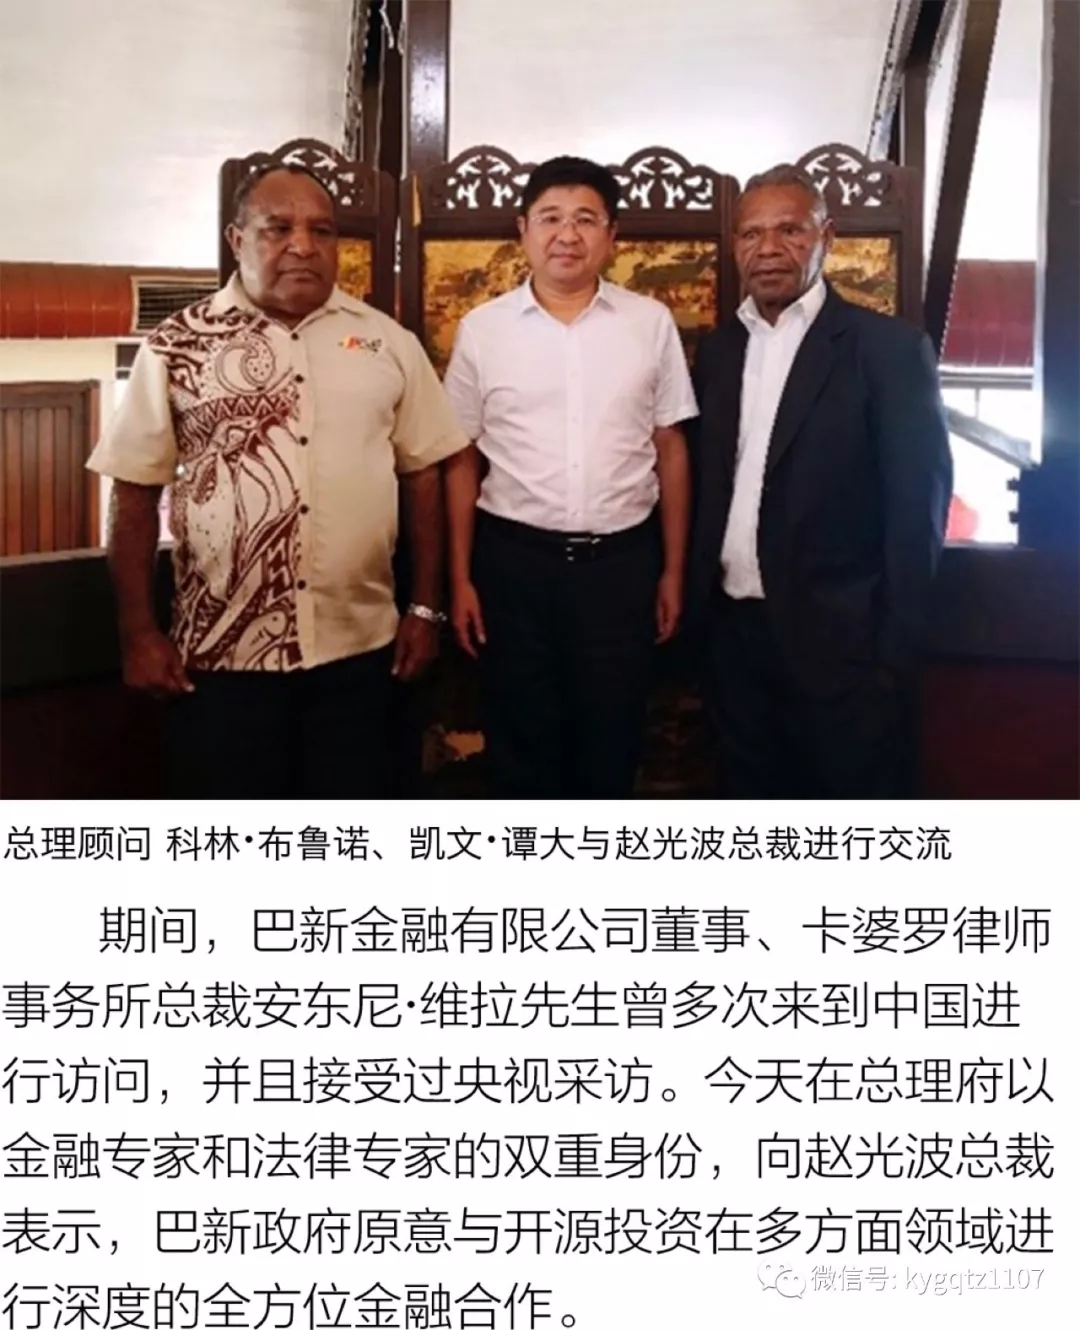 开源投资总裁赵光波受巴布亚新几内亚总理邀请参加apec会议